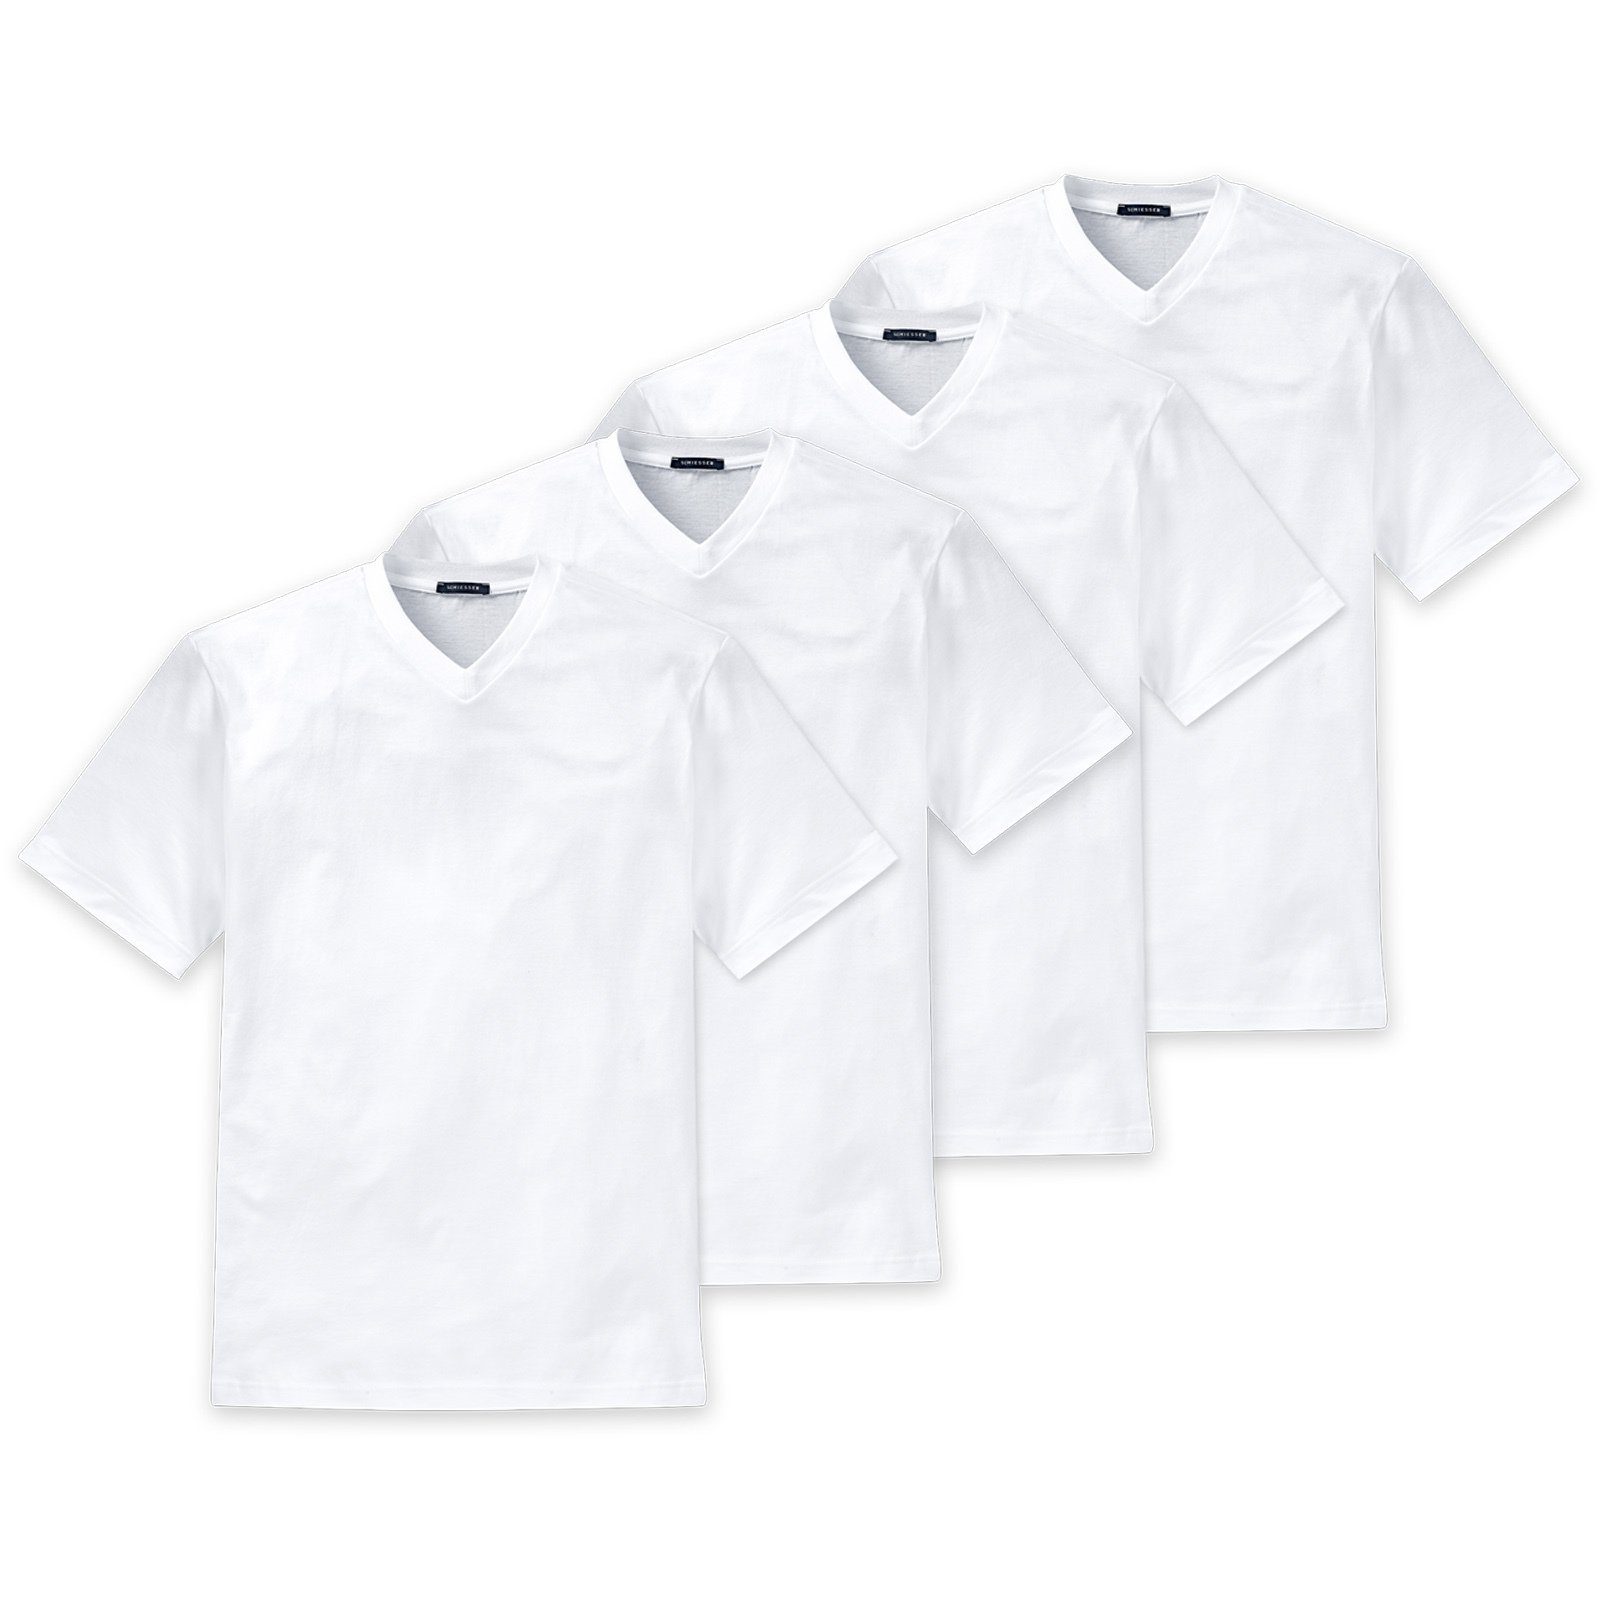 Schiesser T-Shirt Herren American T-Shirt 4er Pack - 1/2 Arm Weiß